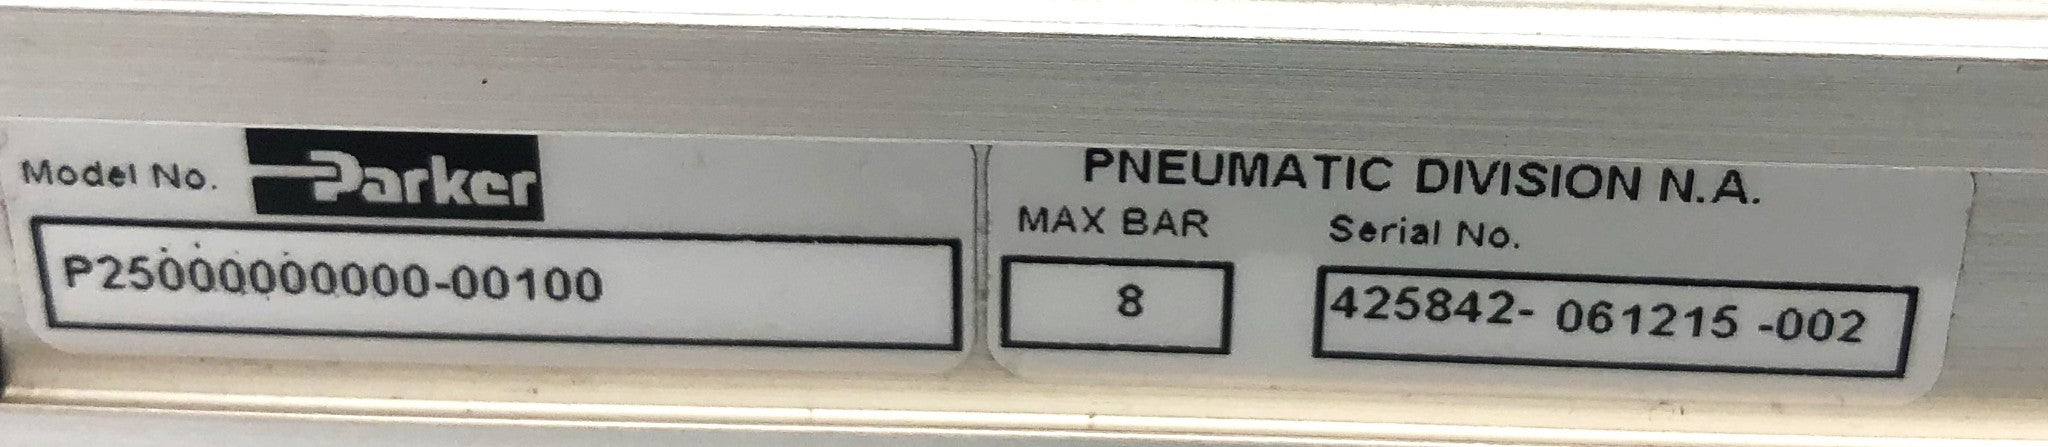 Parker / Origa 8 Bar Max Rodless Pneumatic Actuator P25000000000-00100 NOS